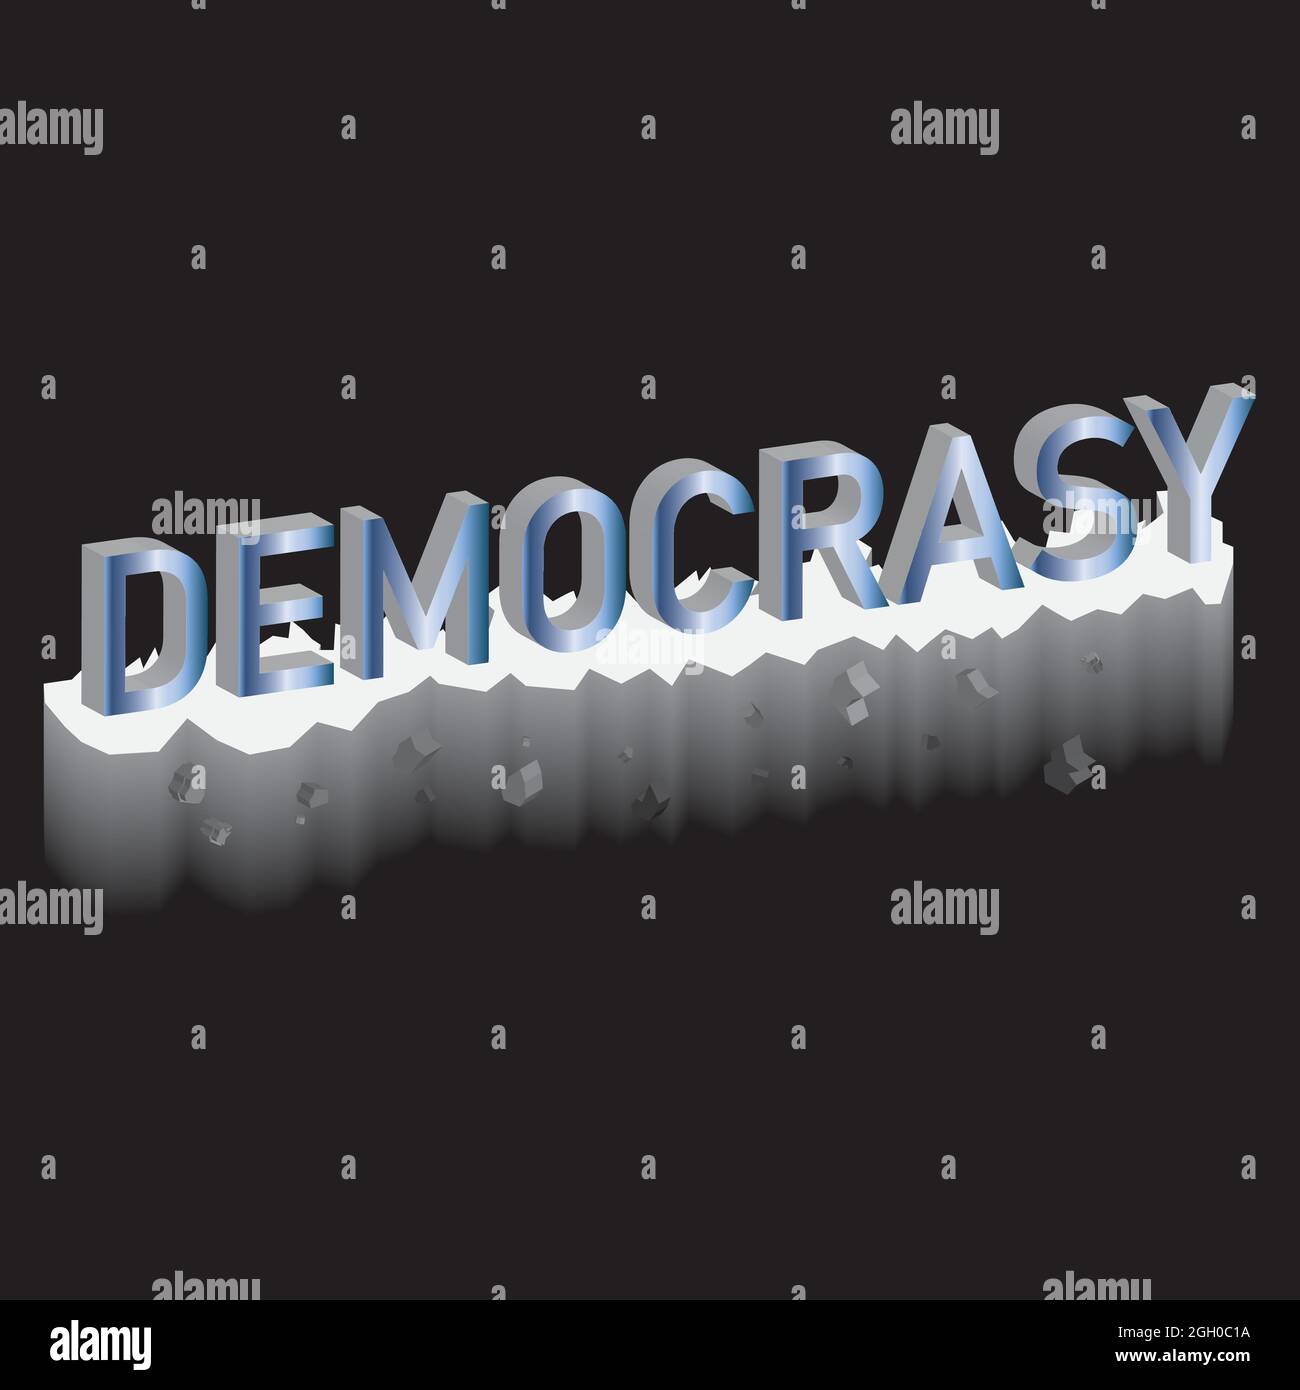 Vote pour la justice et la démocratie. Concept de la Journée internationale de la démocratie . Illustration vectorielle Illustration de Vecteur